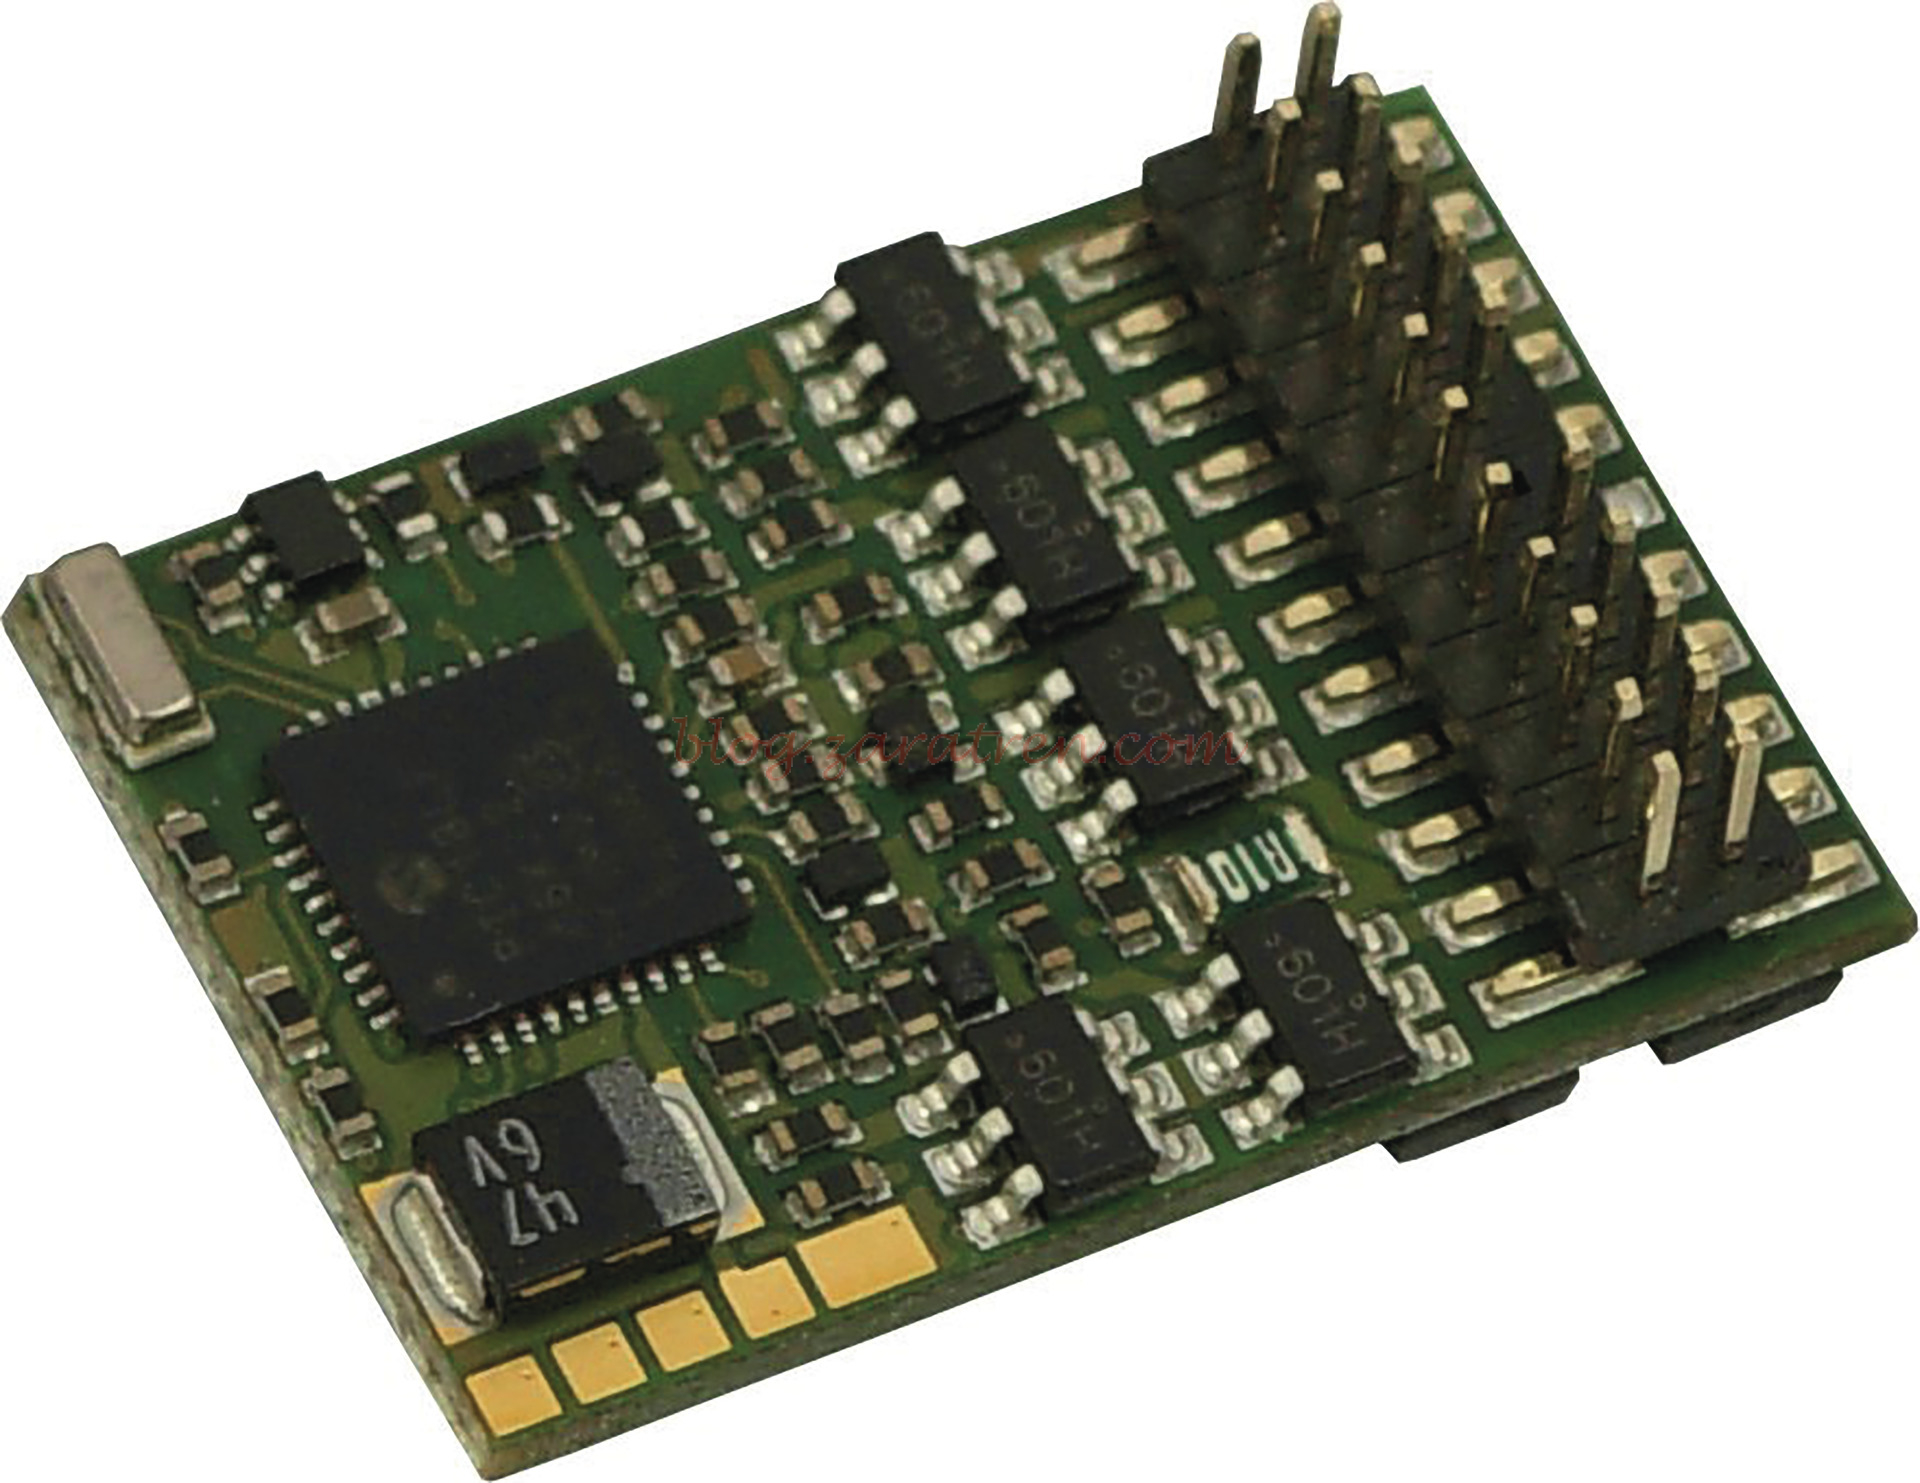 Roco – Decodificador 10896, conector Plux22, para H0.